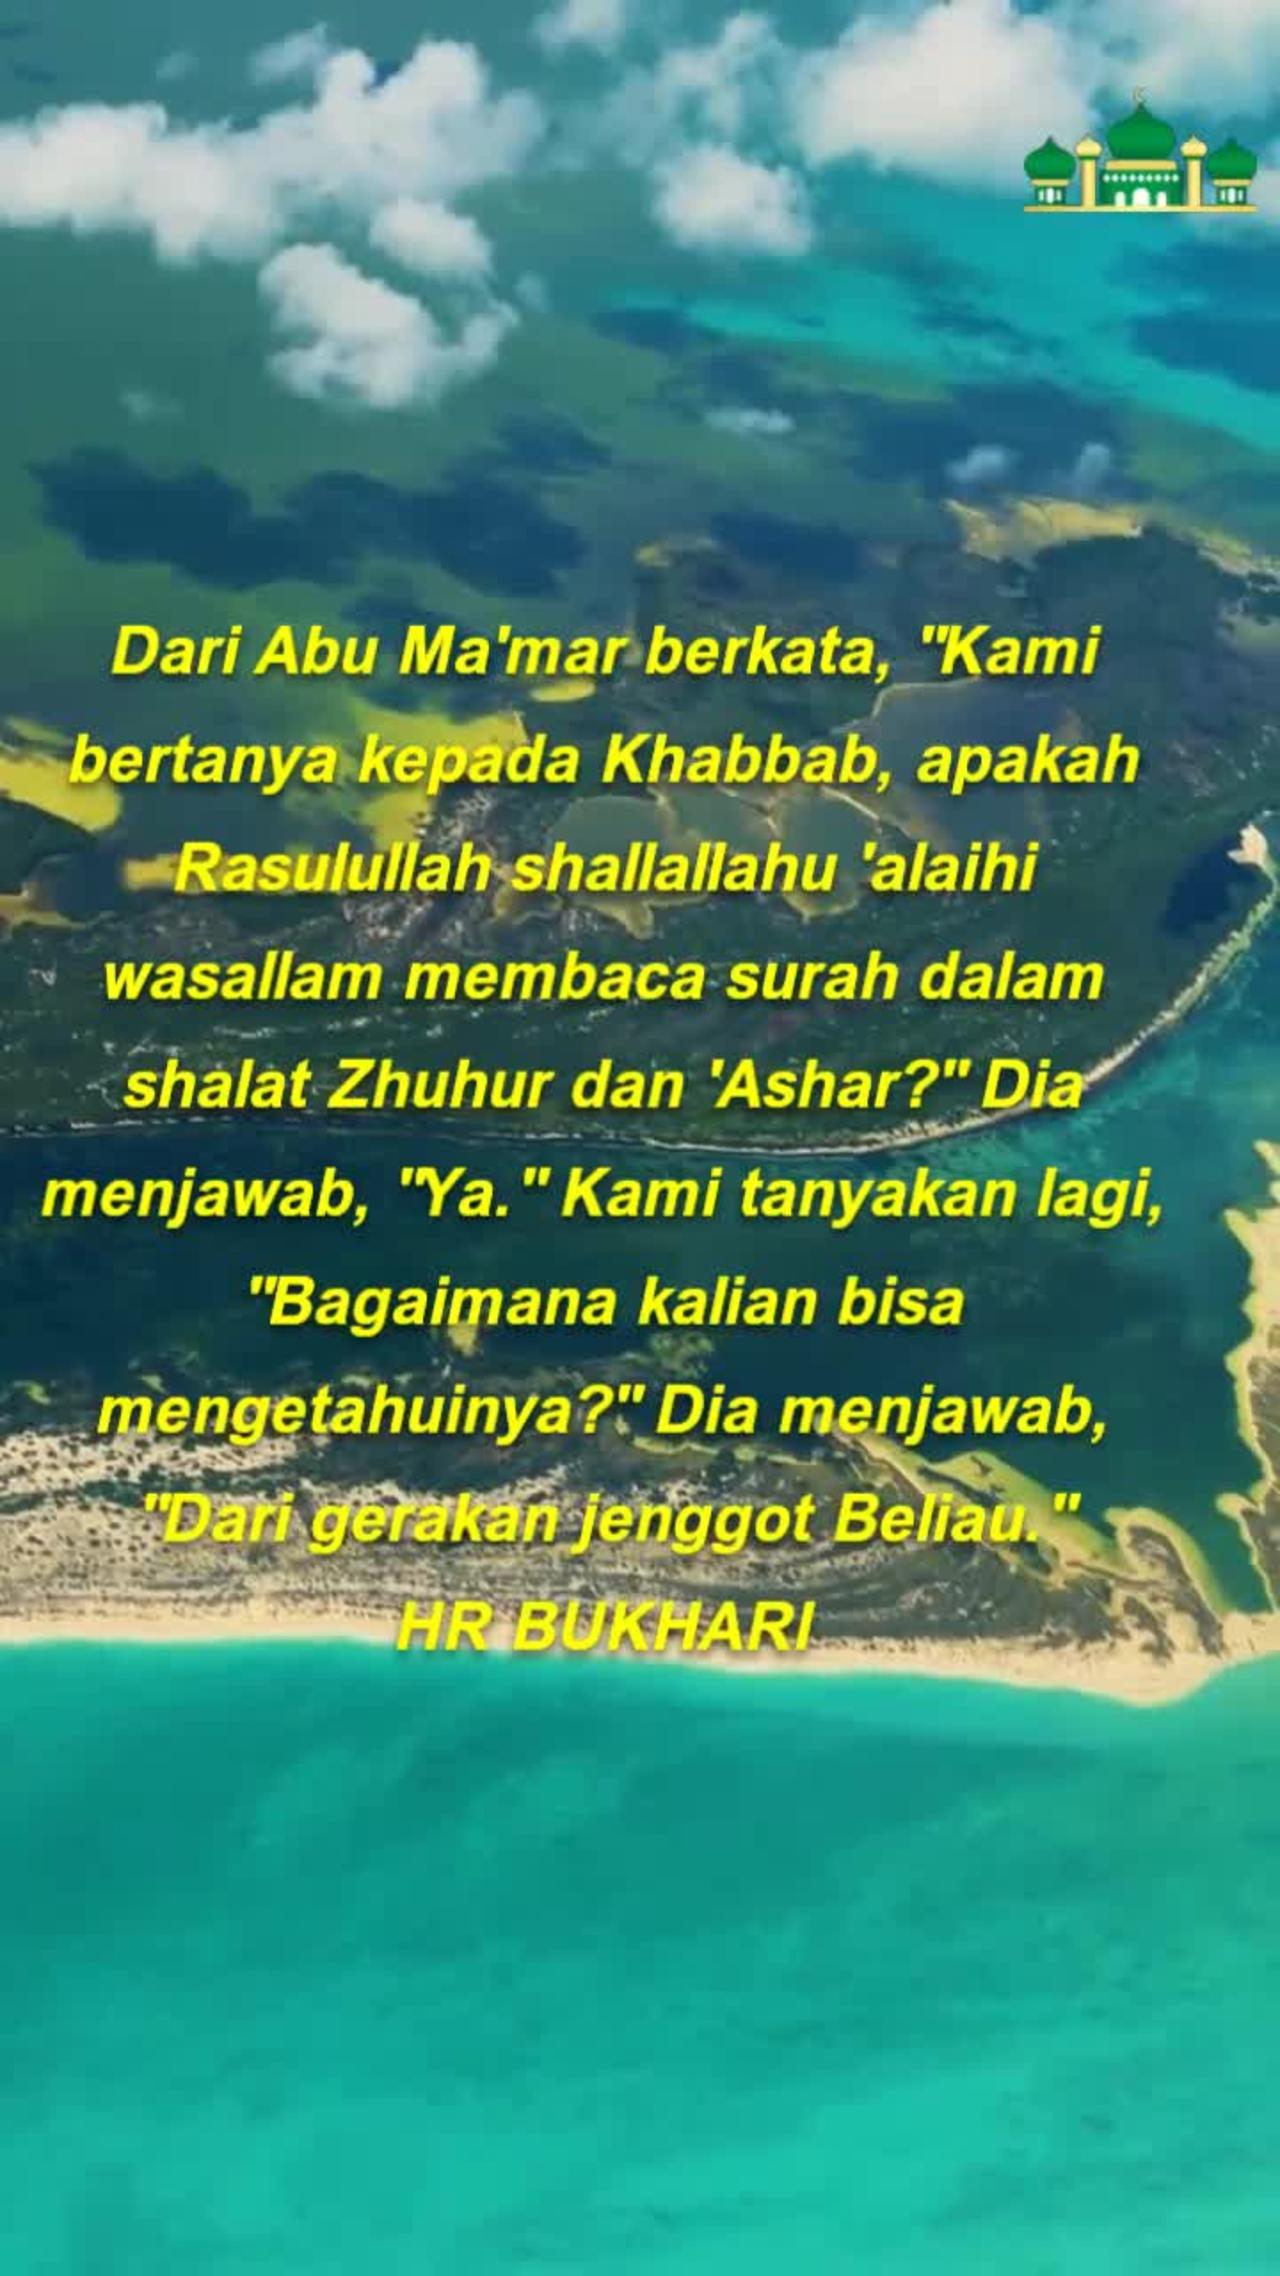 Rasulullah shallallahu 'alaihi wasallam membaca surah dalam shalat Zhuhur dan 'Ashar